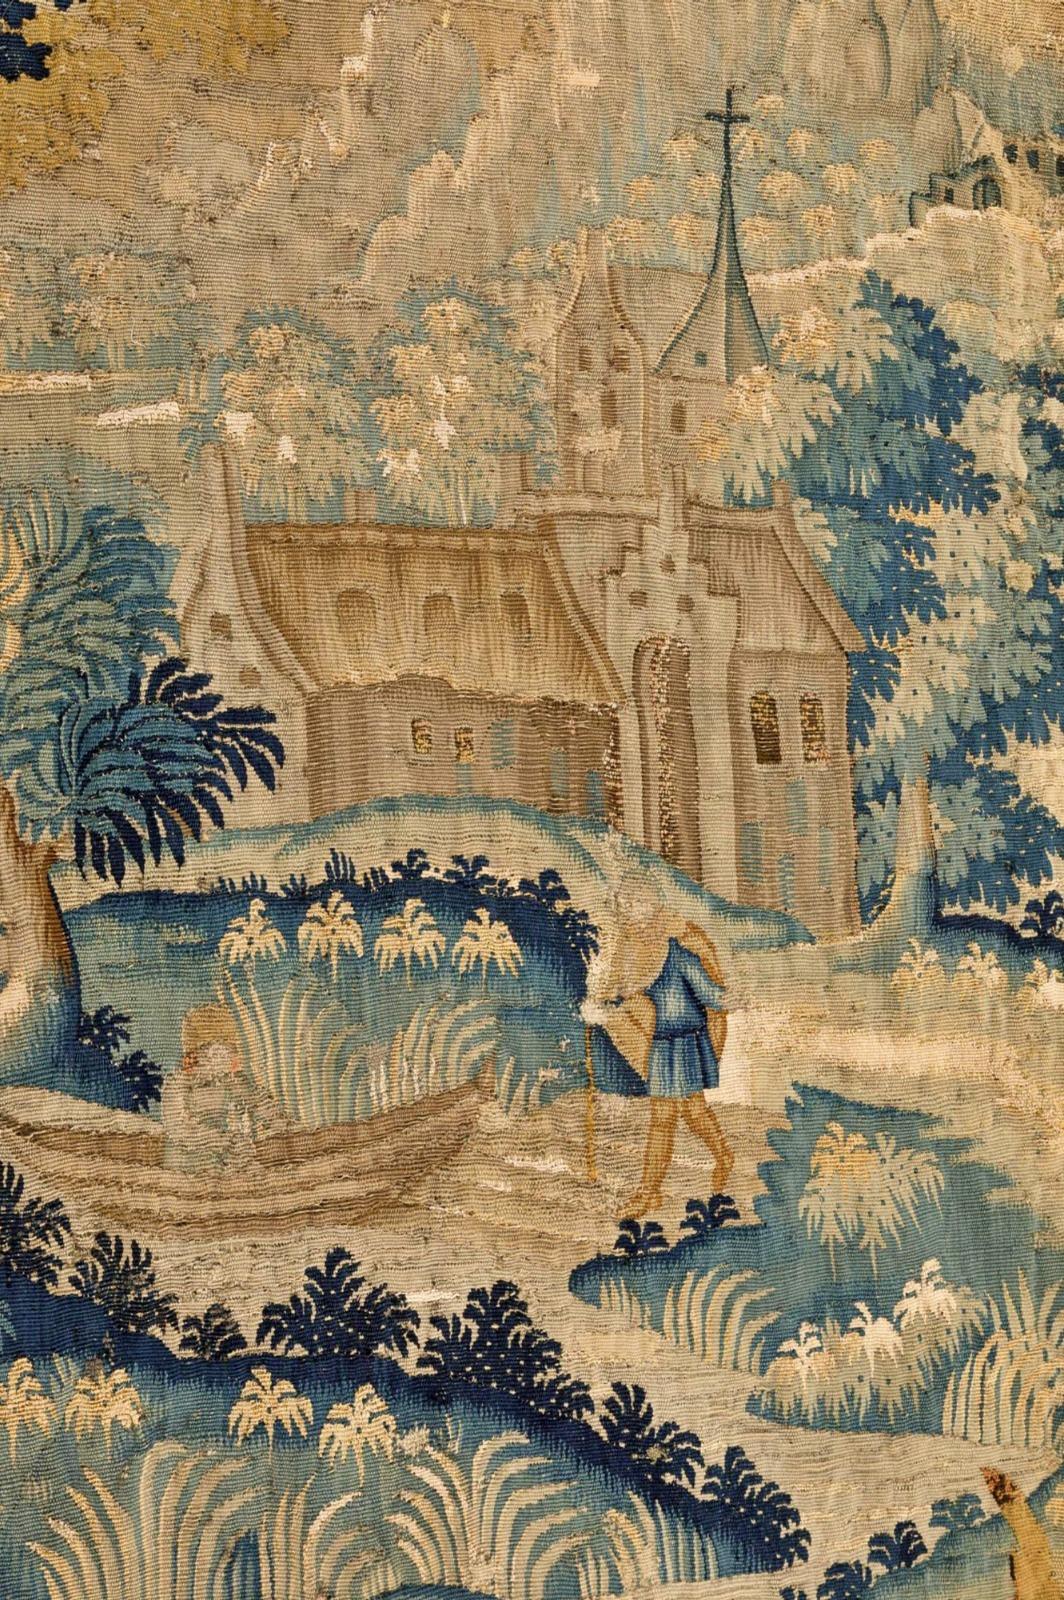 Belle tapisserie flamande du 17ème siècle

Tapisserie murale en laine et lin des Pays-Bas méridionaux du XVIIe siècle. 
Représentation de promeneurs devant un château. 
300 x 192 cm
Bon état.